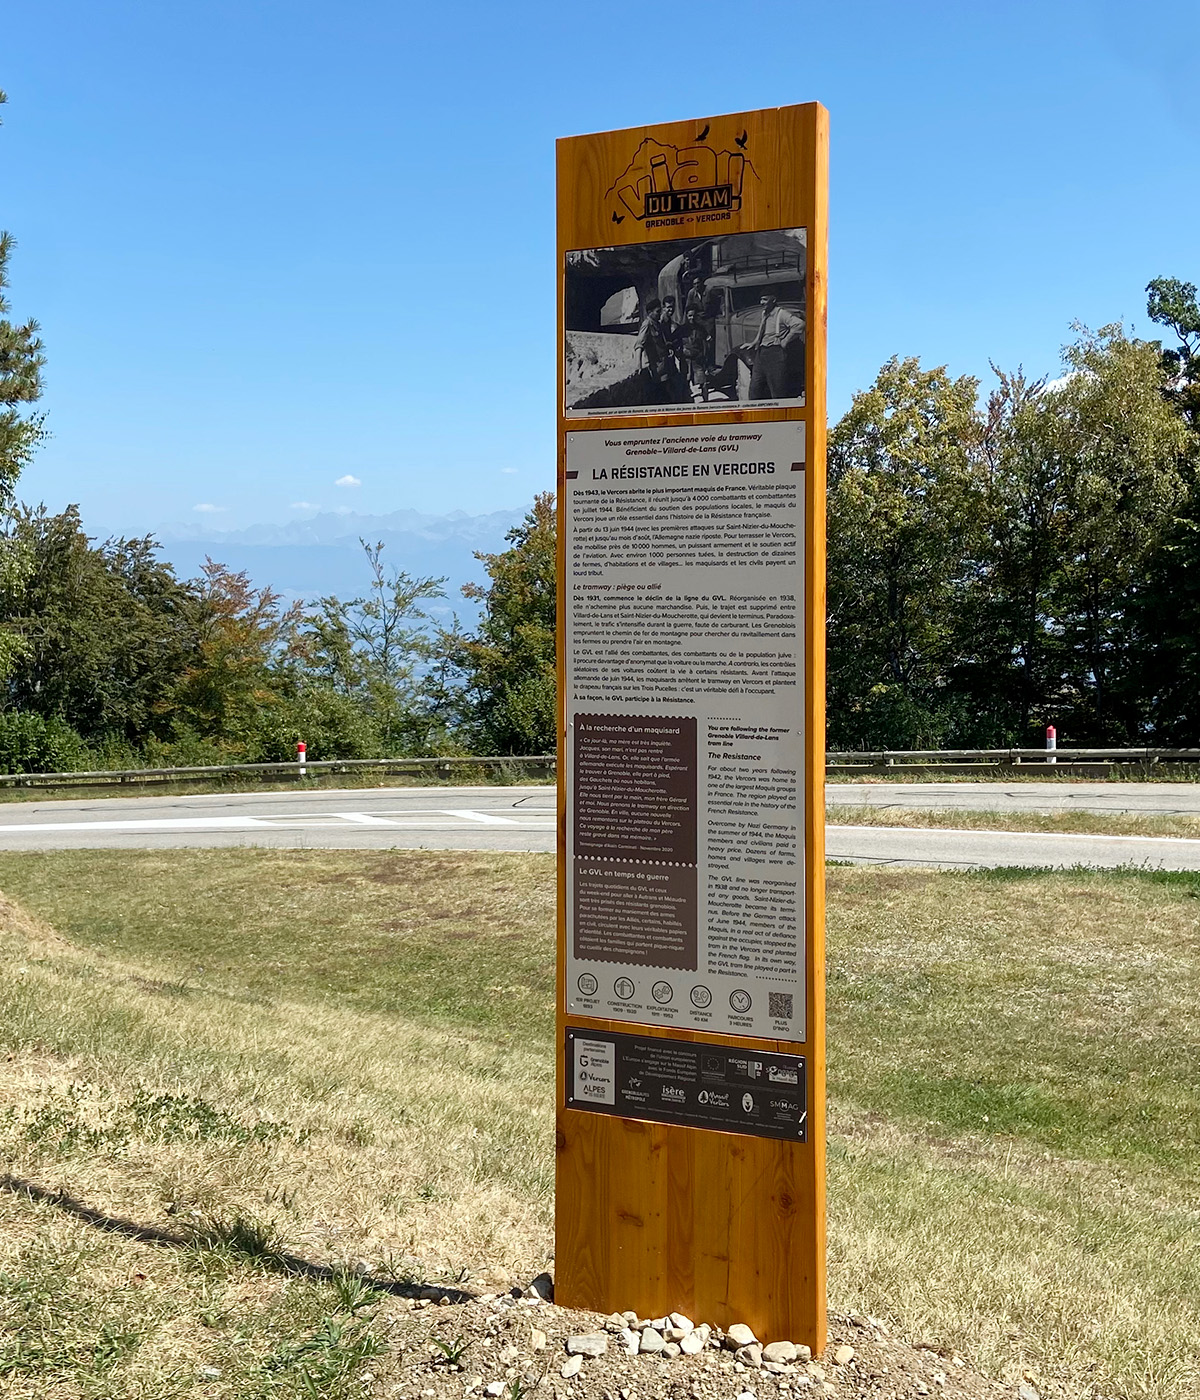 Panneaux d'exposition sur le patrimoine de la Via du Tram créés pour Grenoble-Alpes Métropole par Caramel & Paprika - Panneau 5 sur "La Résistance en Vercors" installé sur site.